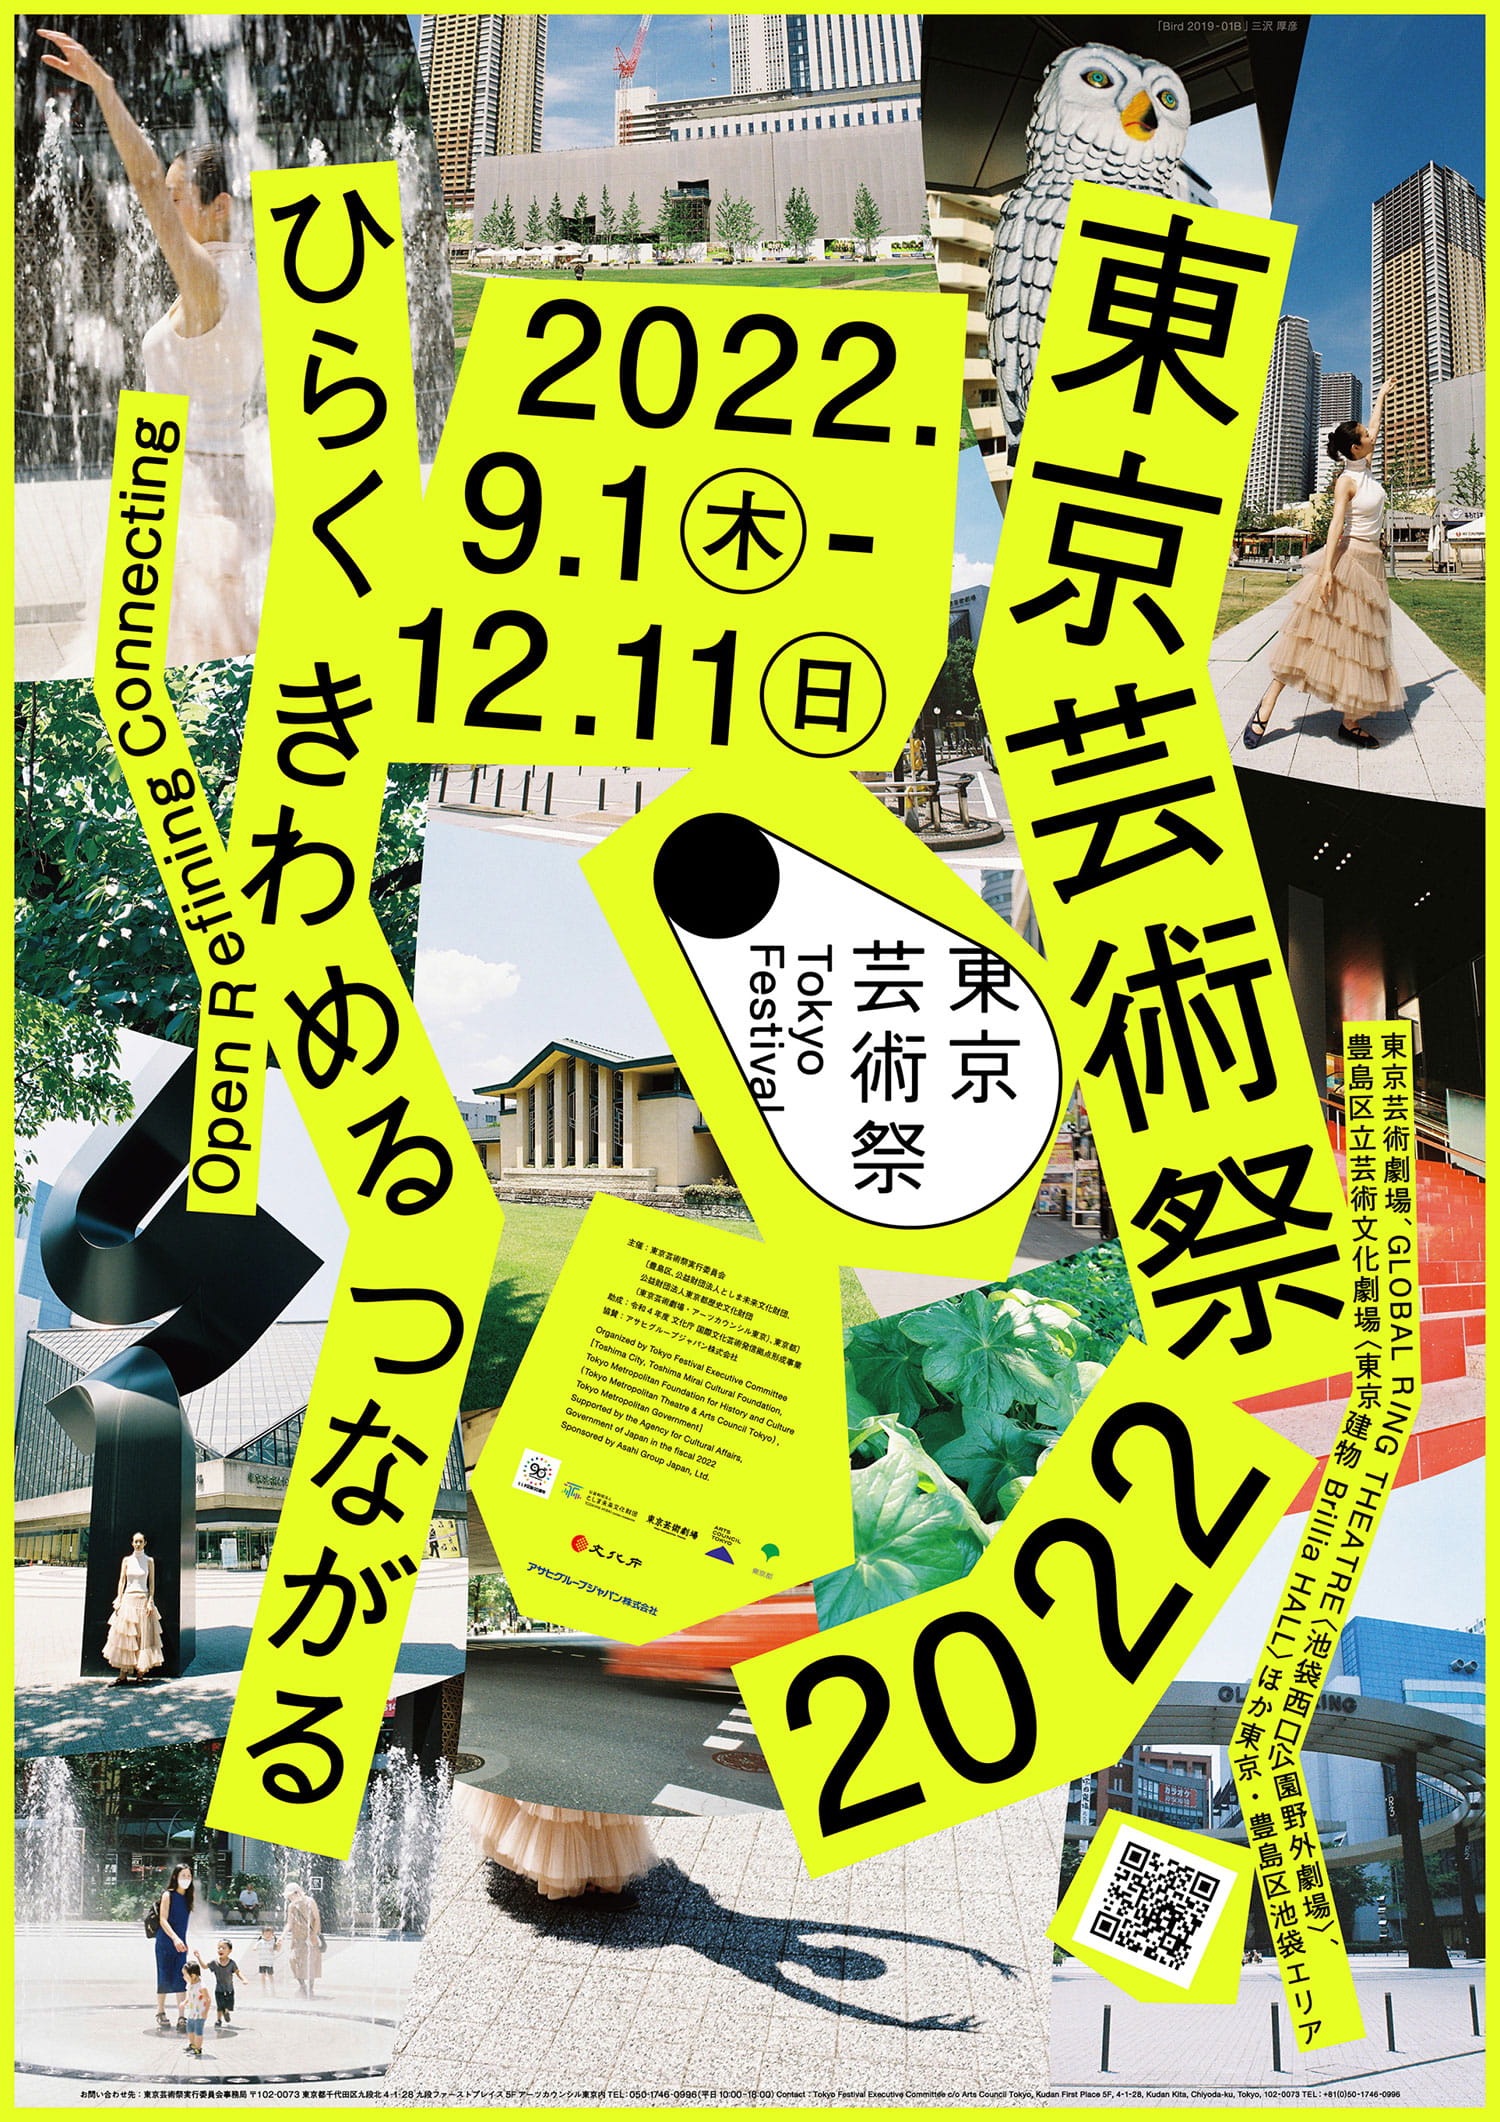 Tokyo Festival 2022